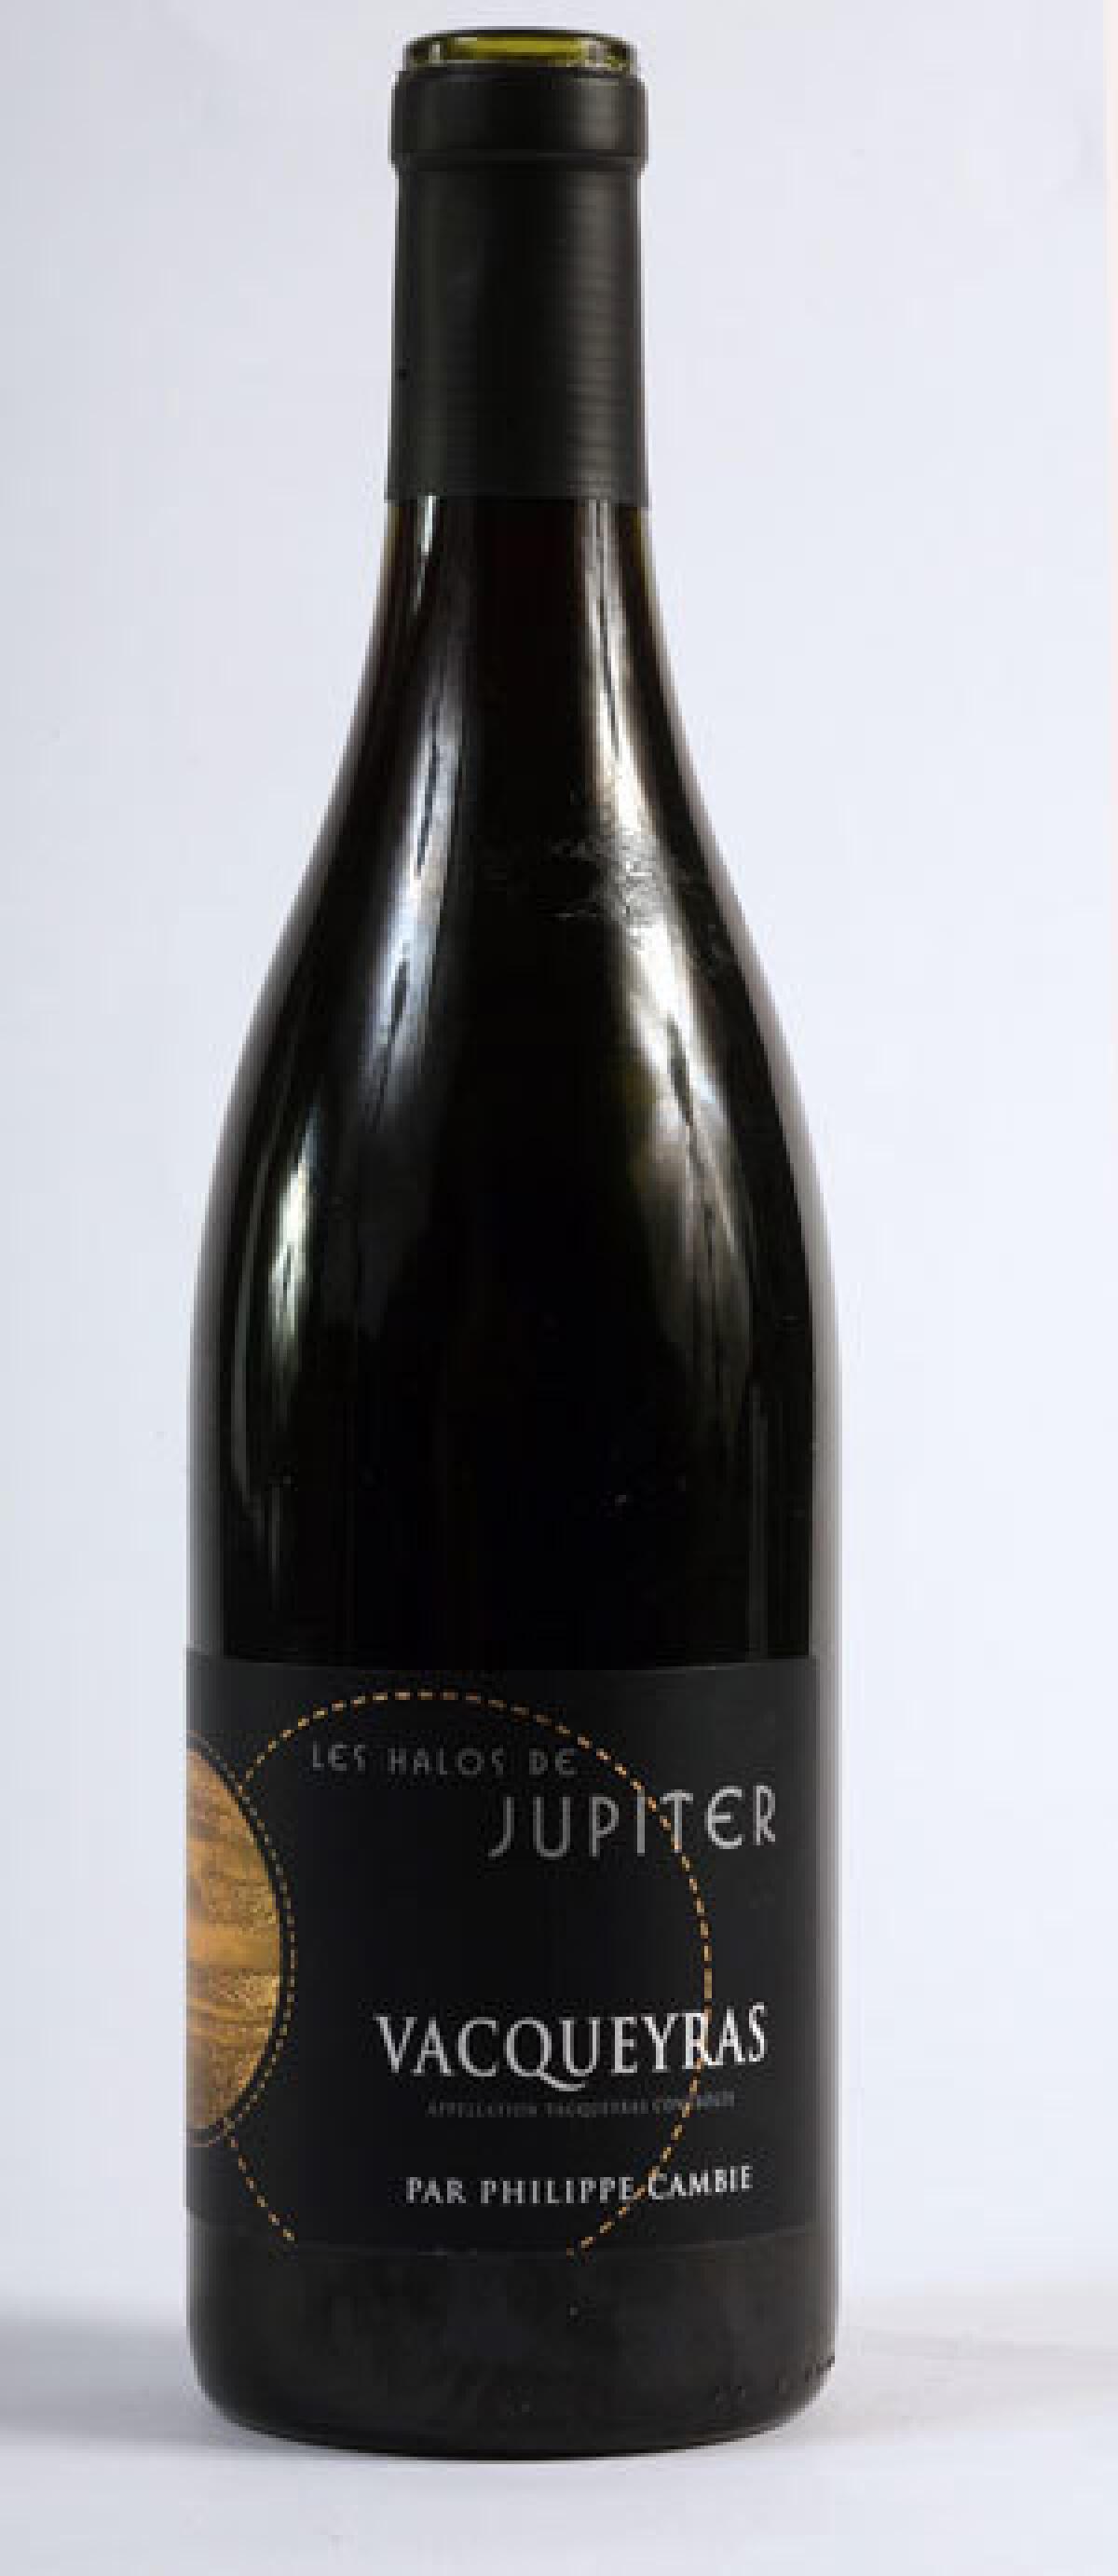 Les Halos de Jupiter wine.